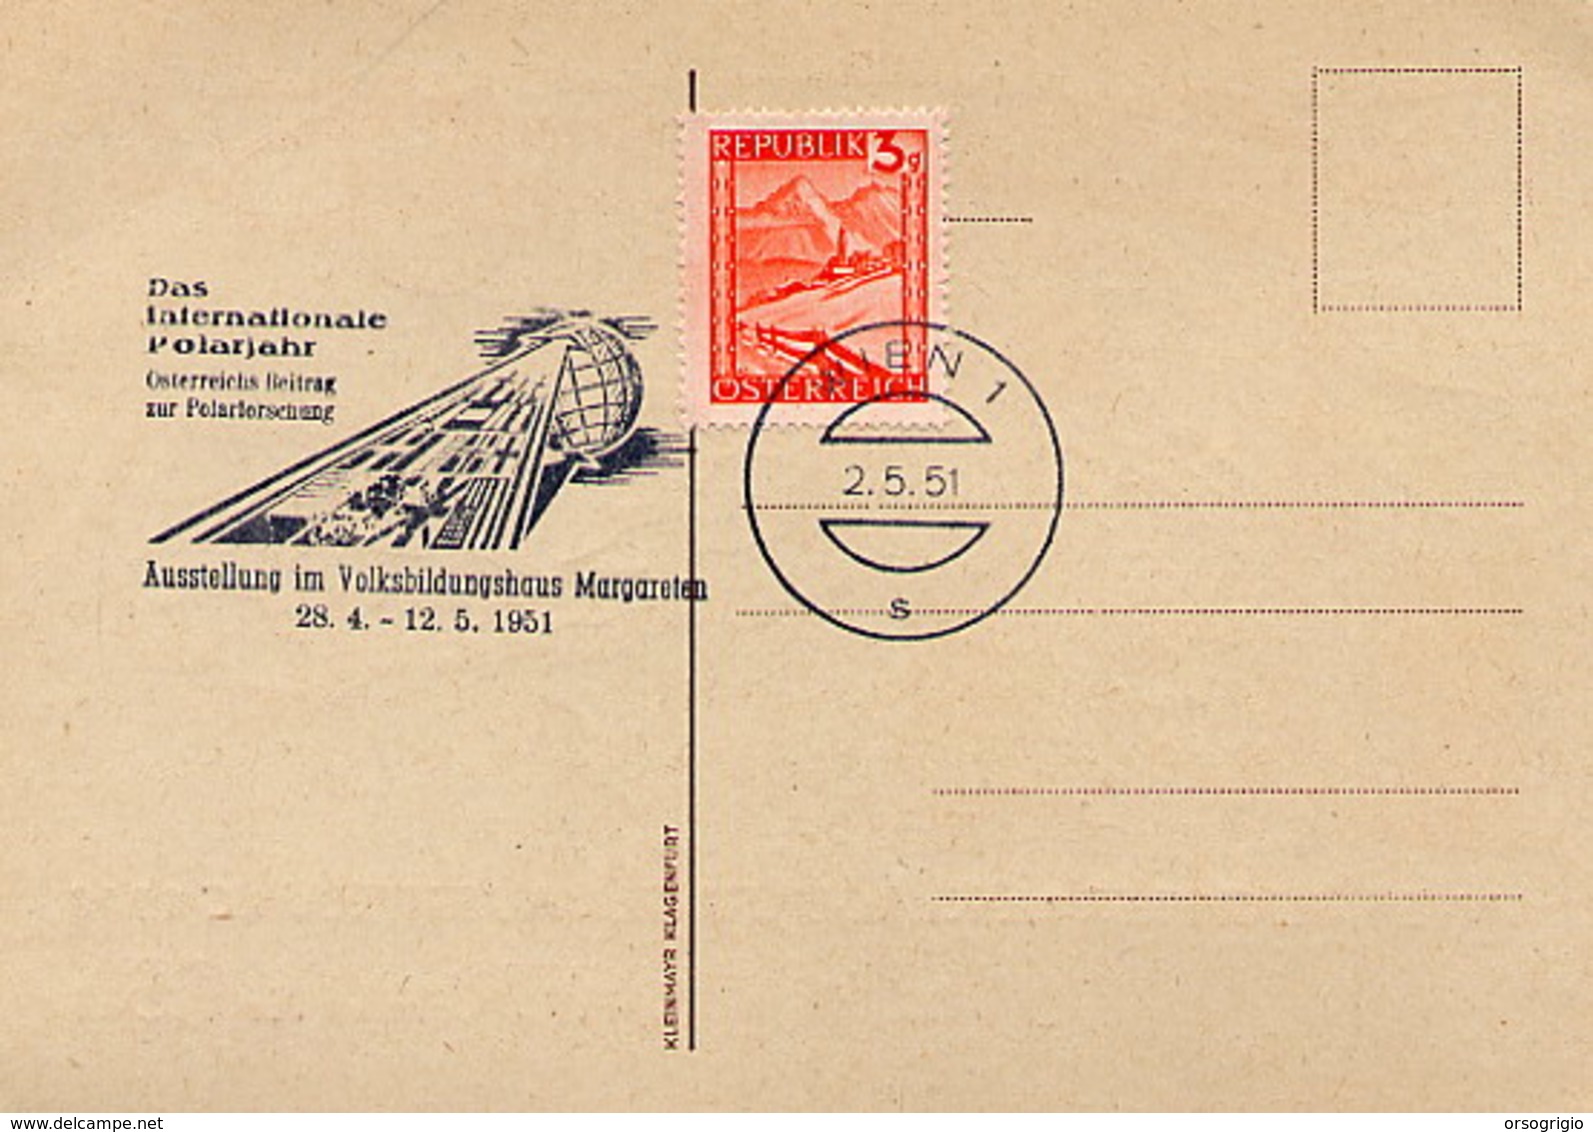 AUSTRIA - WIEN  1951 -  DAS INTERNATIONALE  POLARJAHR - Année Polaire Internationale